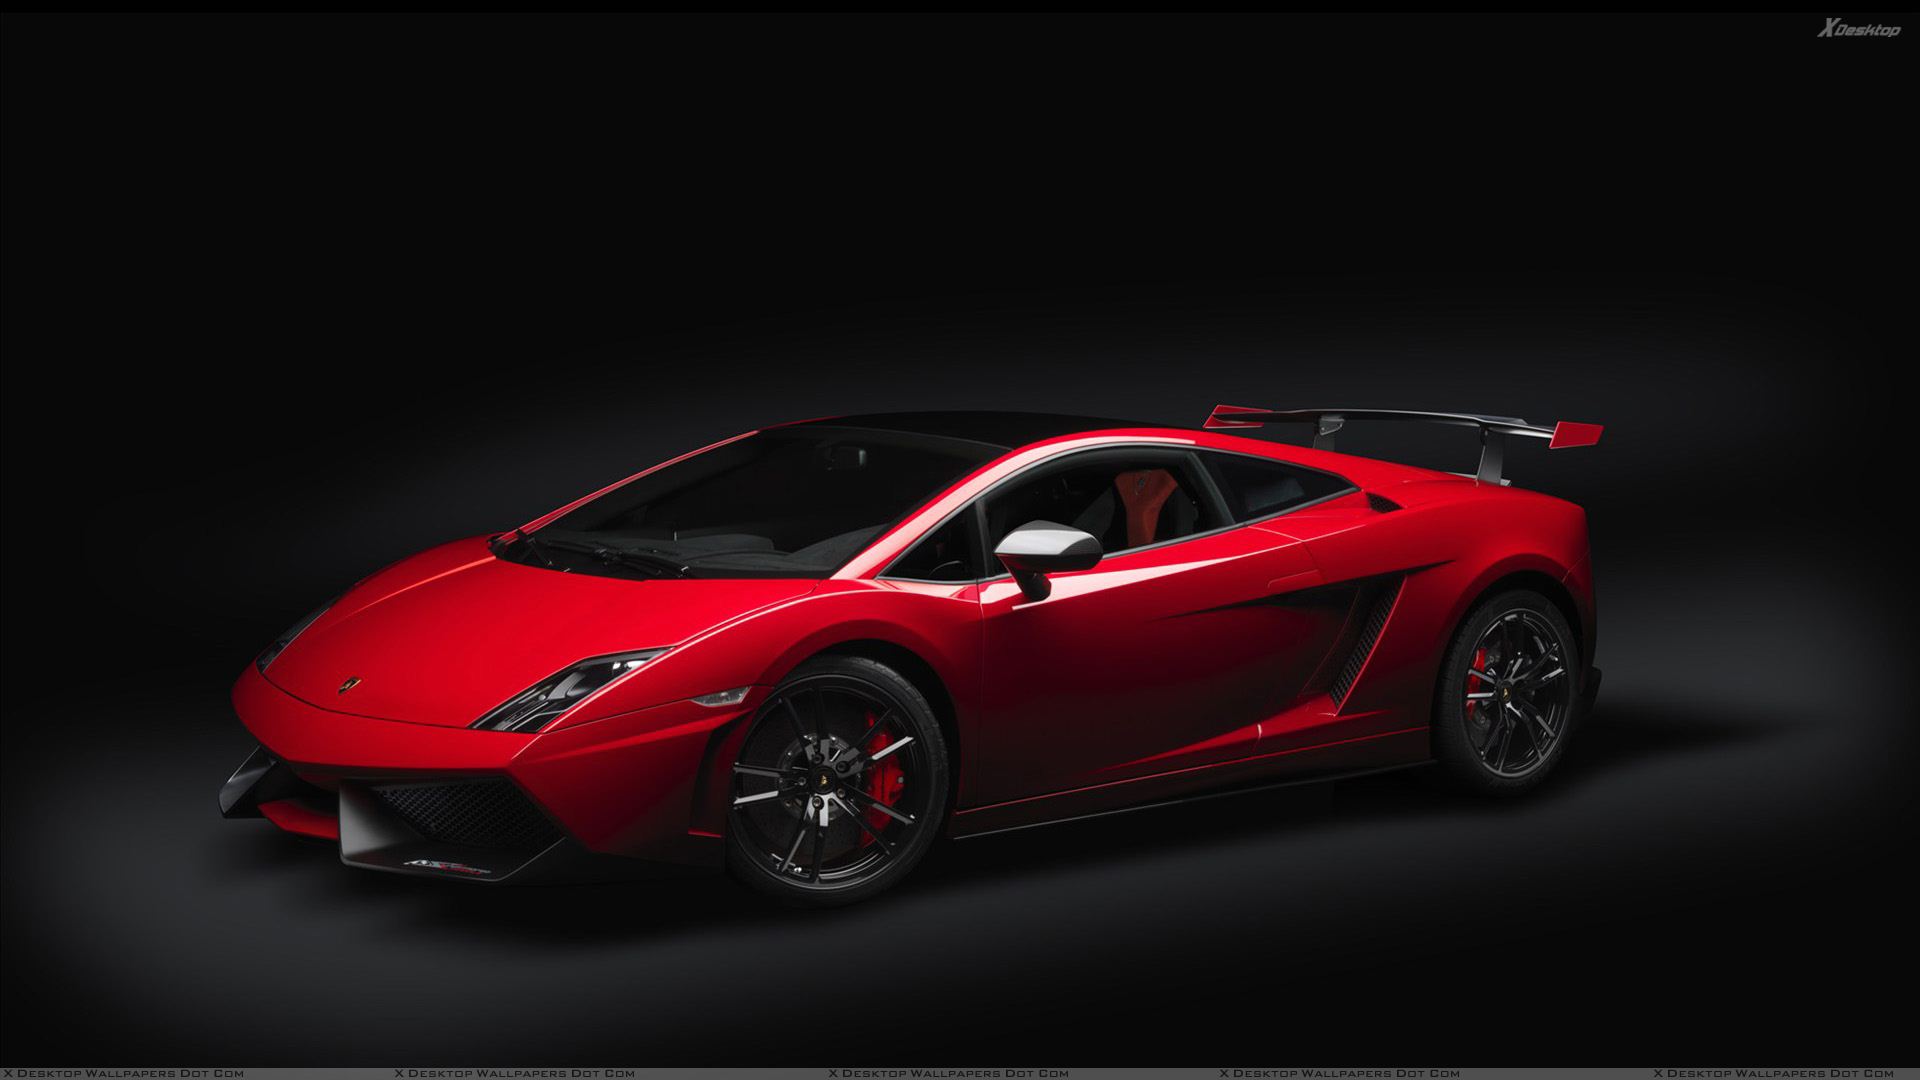 Cool Red Lamborghini Wallpapers - image #475